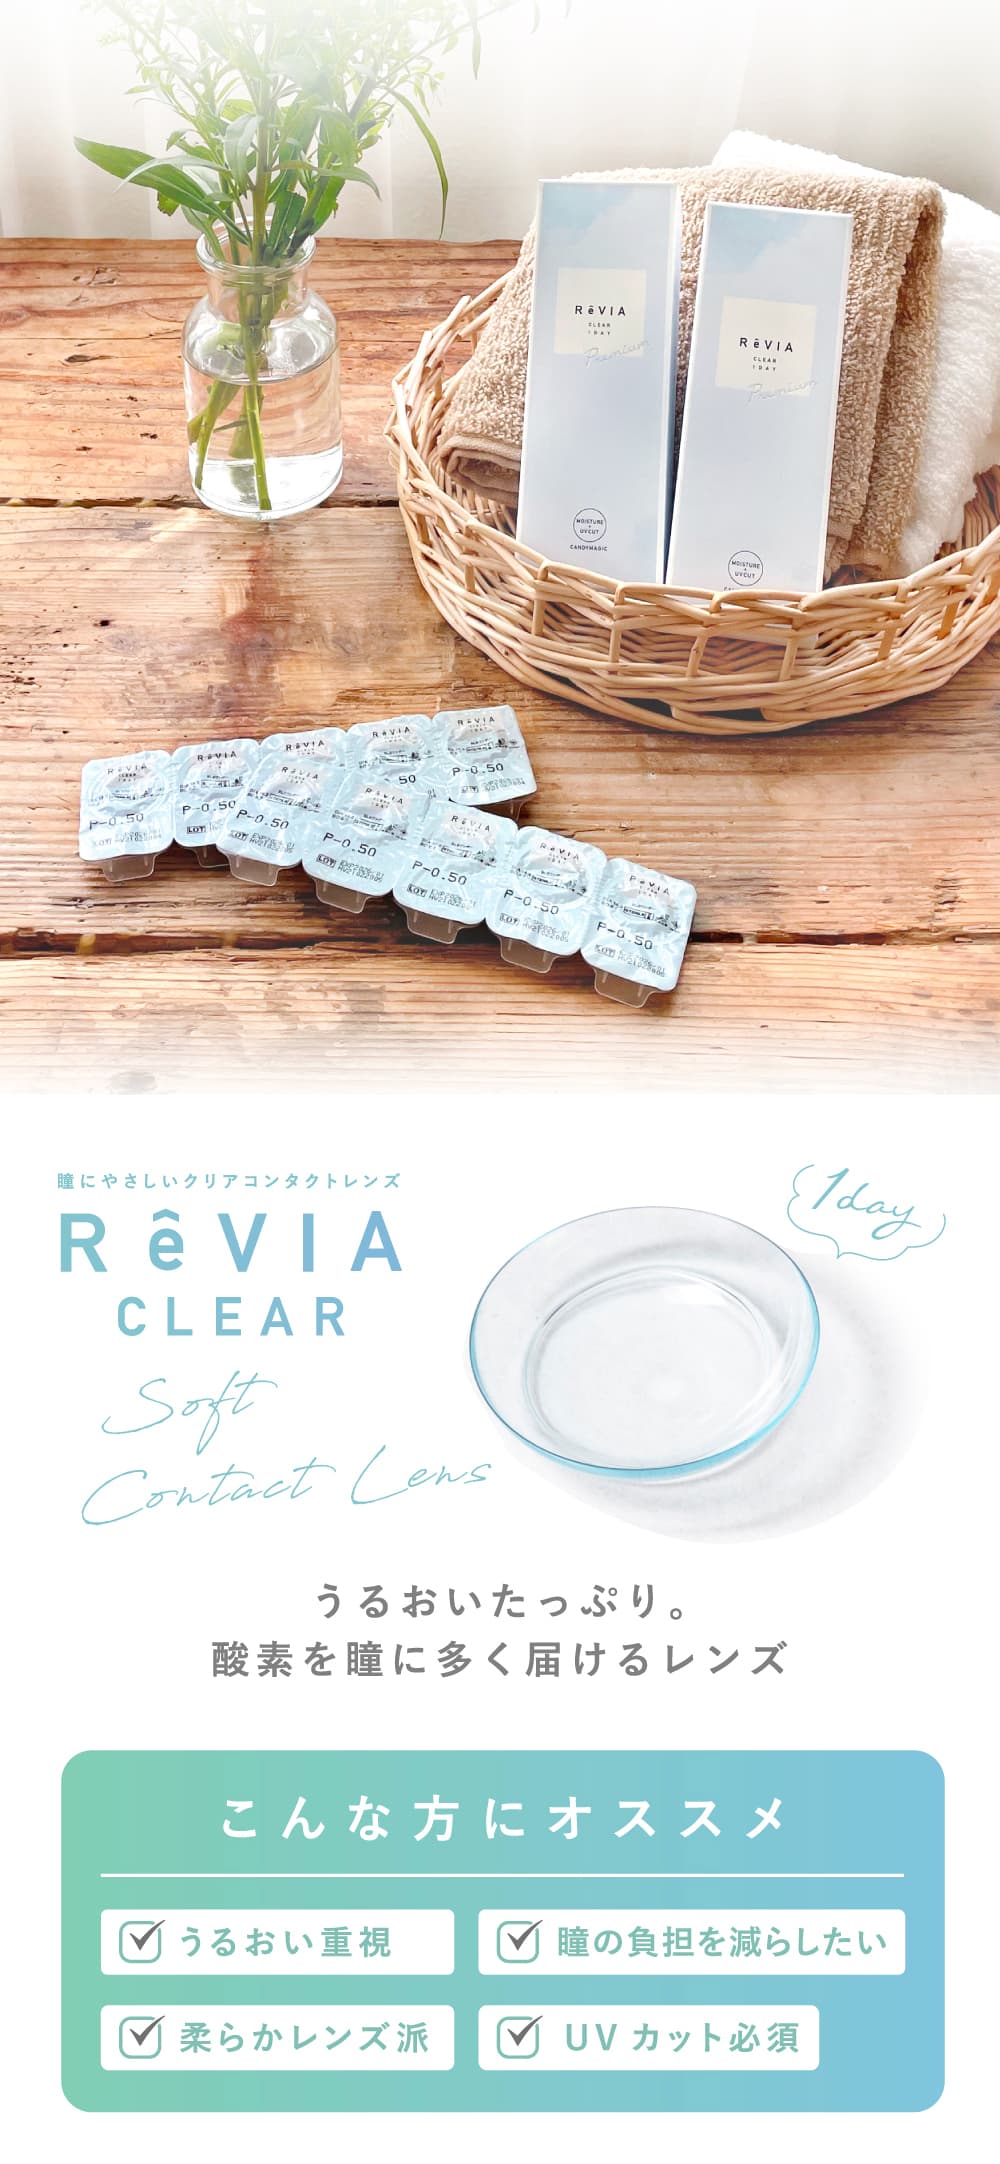  新ReVIA CLEAR 1day Premium 機能説明